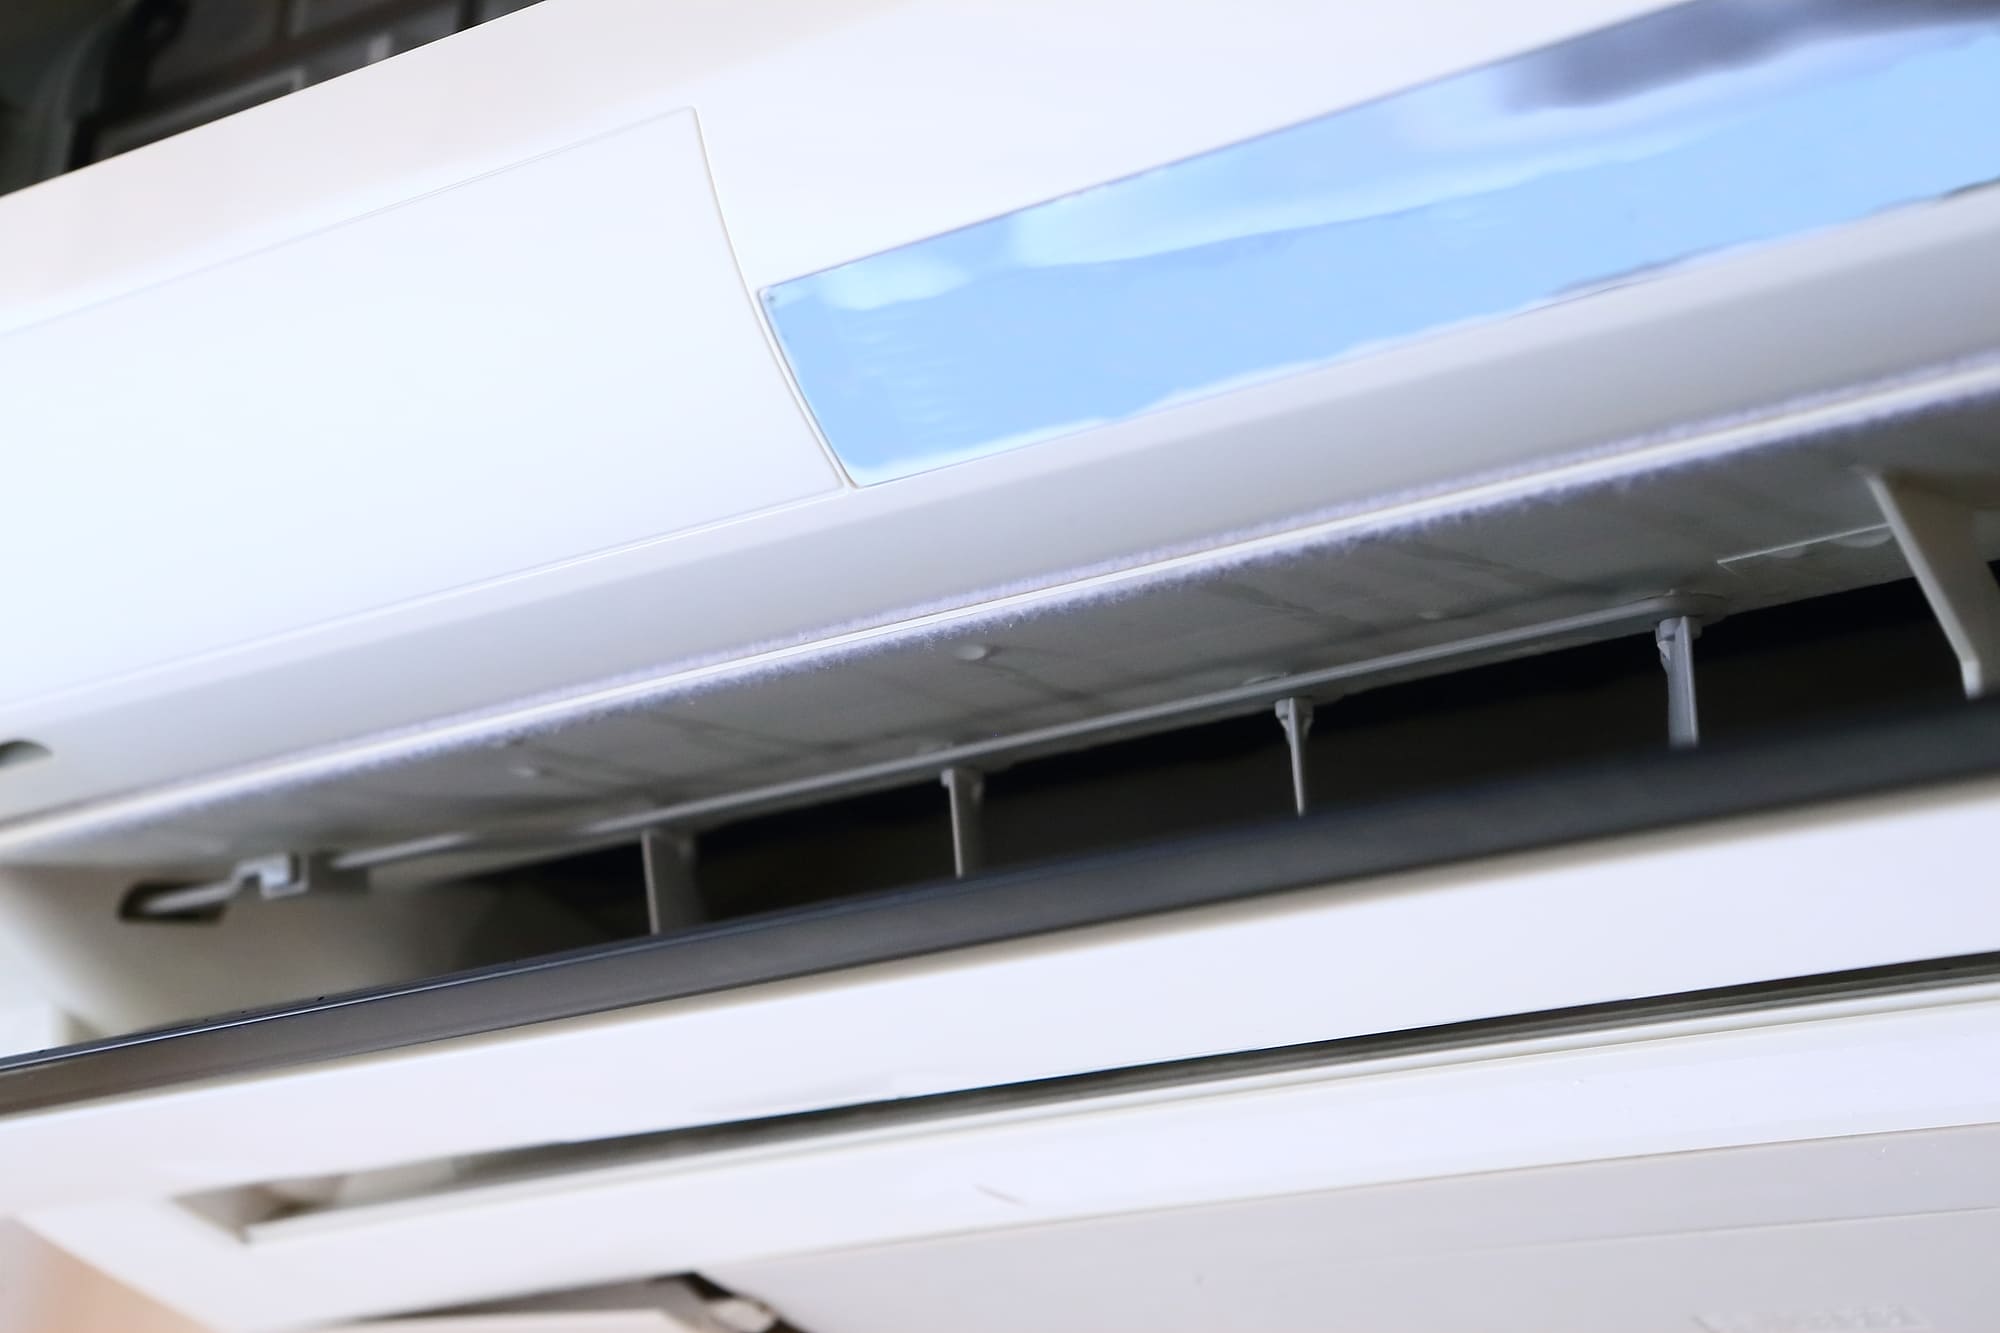 水 漏れ 室内 エアコン 業務用エアコンの水漏れ原因と対処法。